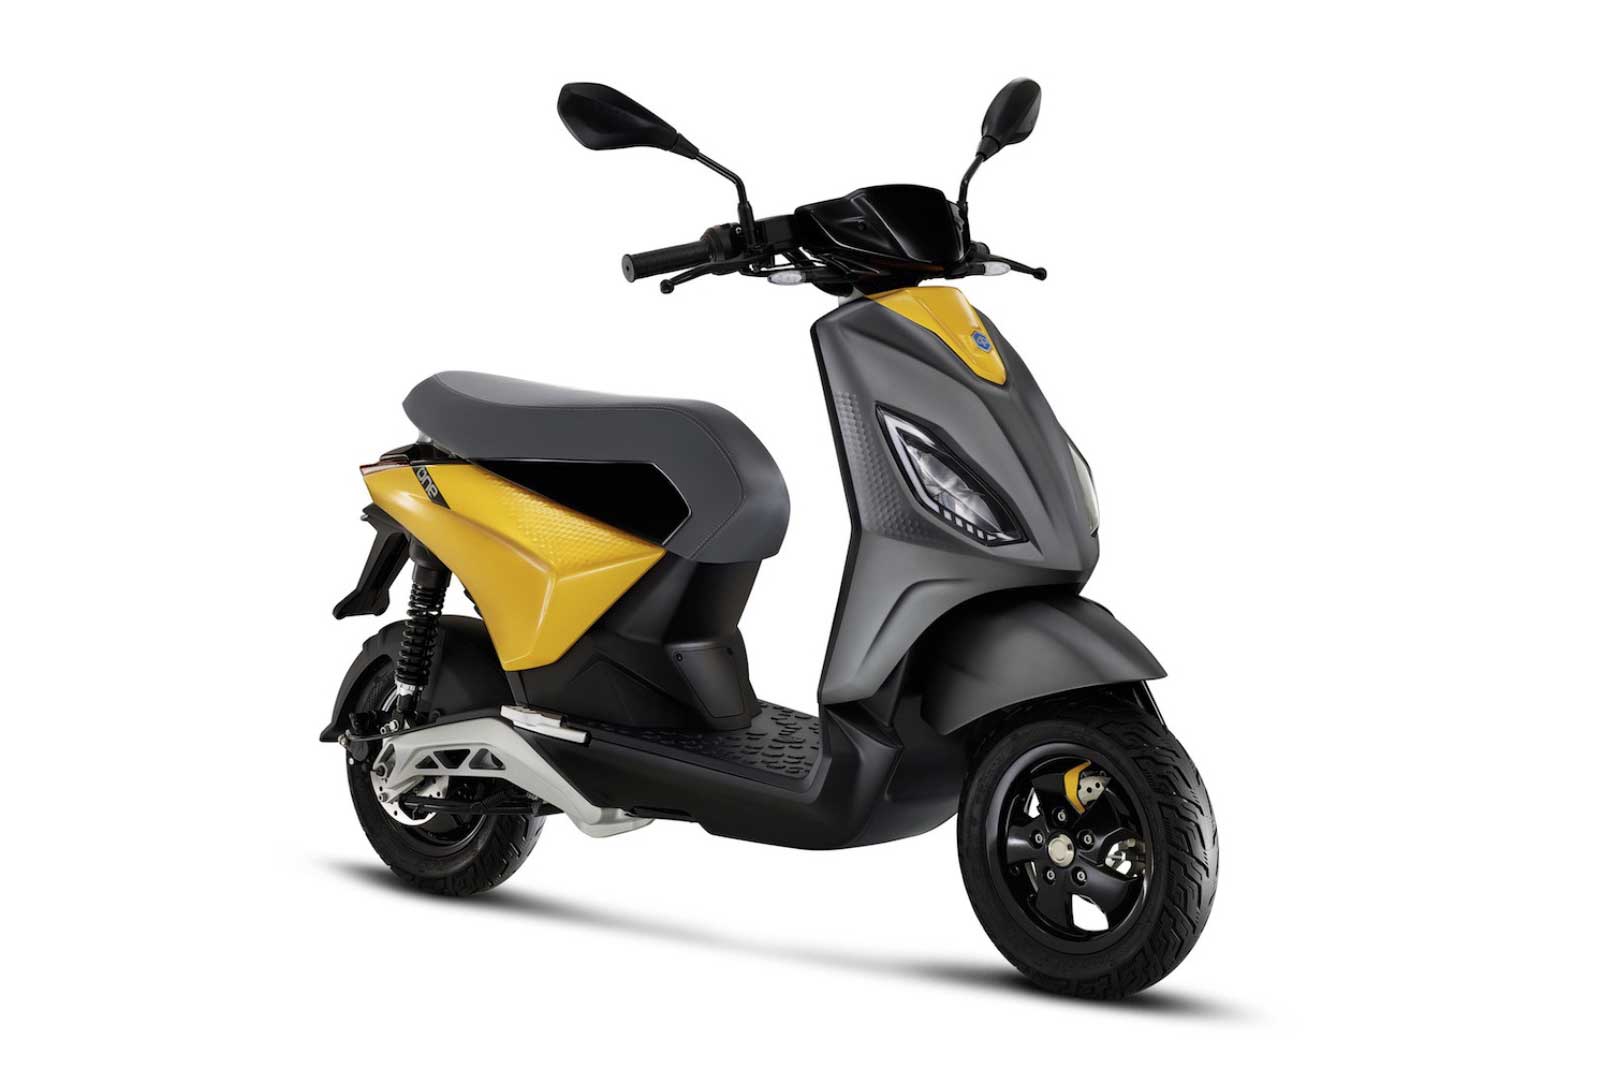 Piaggio One : le nouveau scooter électrique de Piaggio en détail